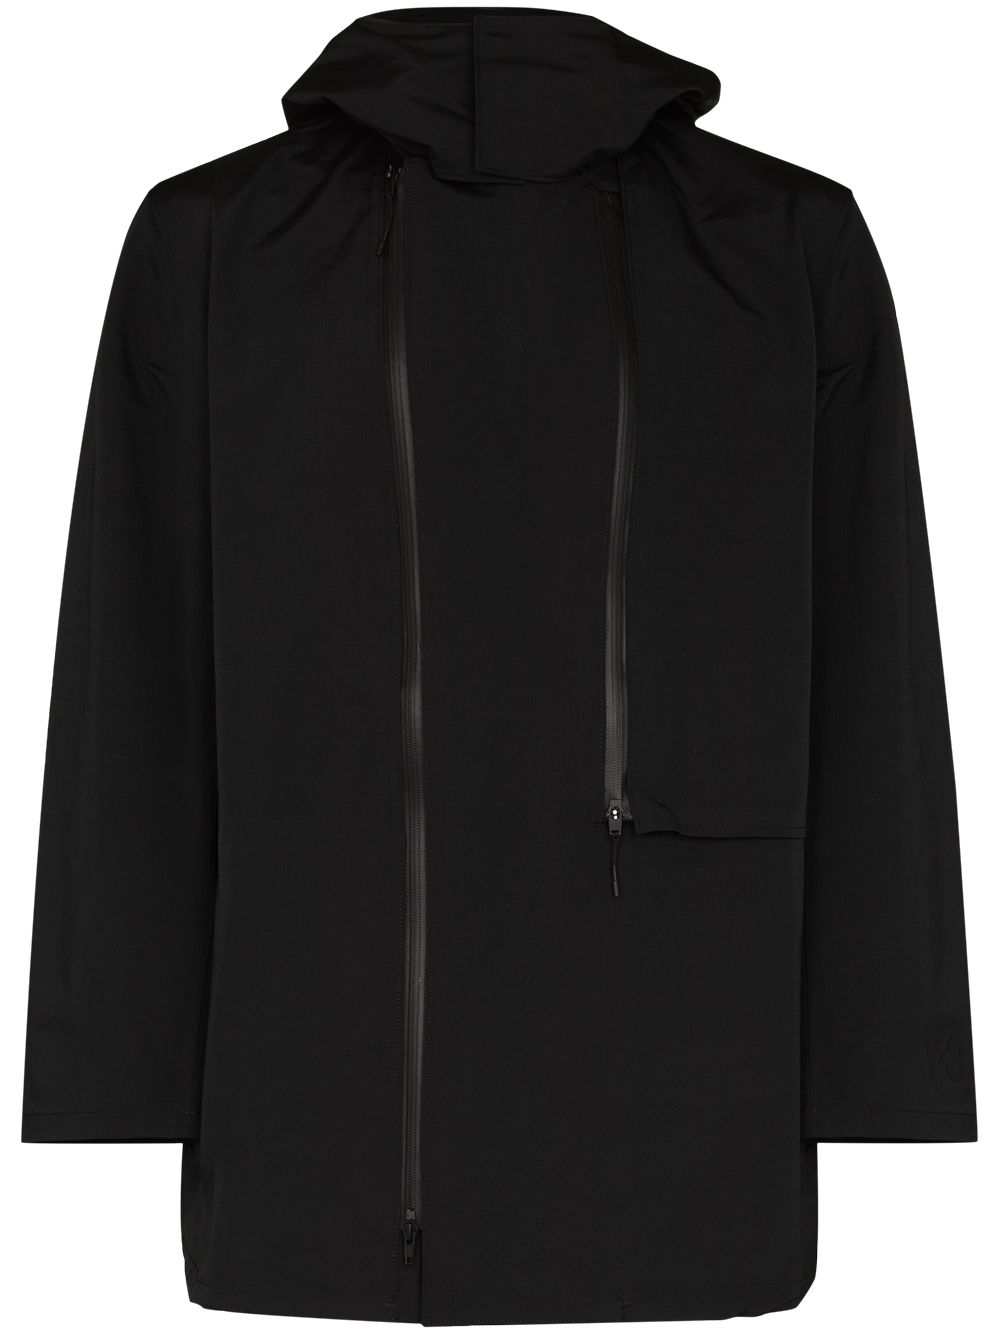 Y-3 zip-up hooded parka coat